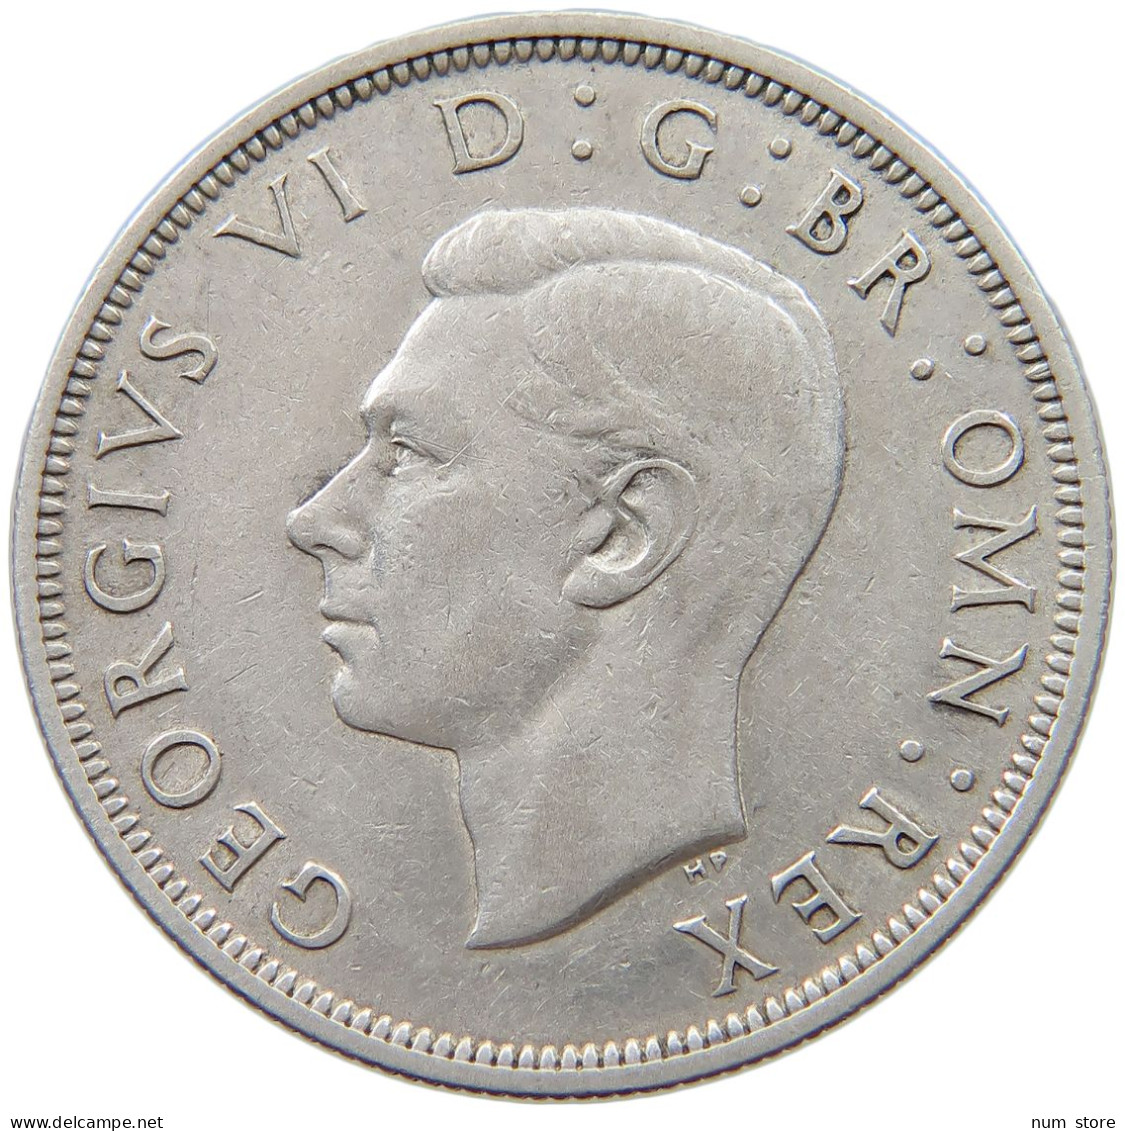 GREAT BRITAIN HALF CROWN 1941 George VI. (1936-1952) #s048 0235 - K. 1/2 Crown